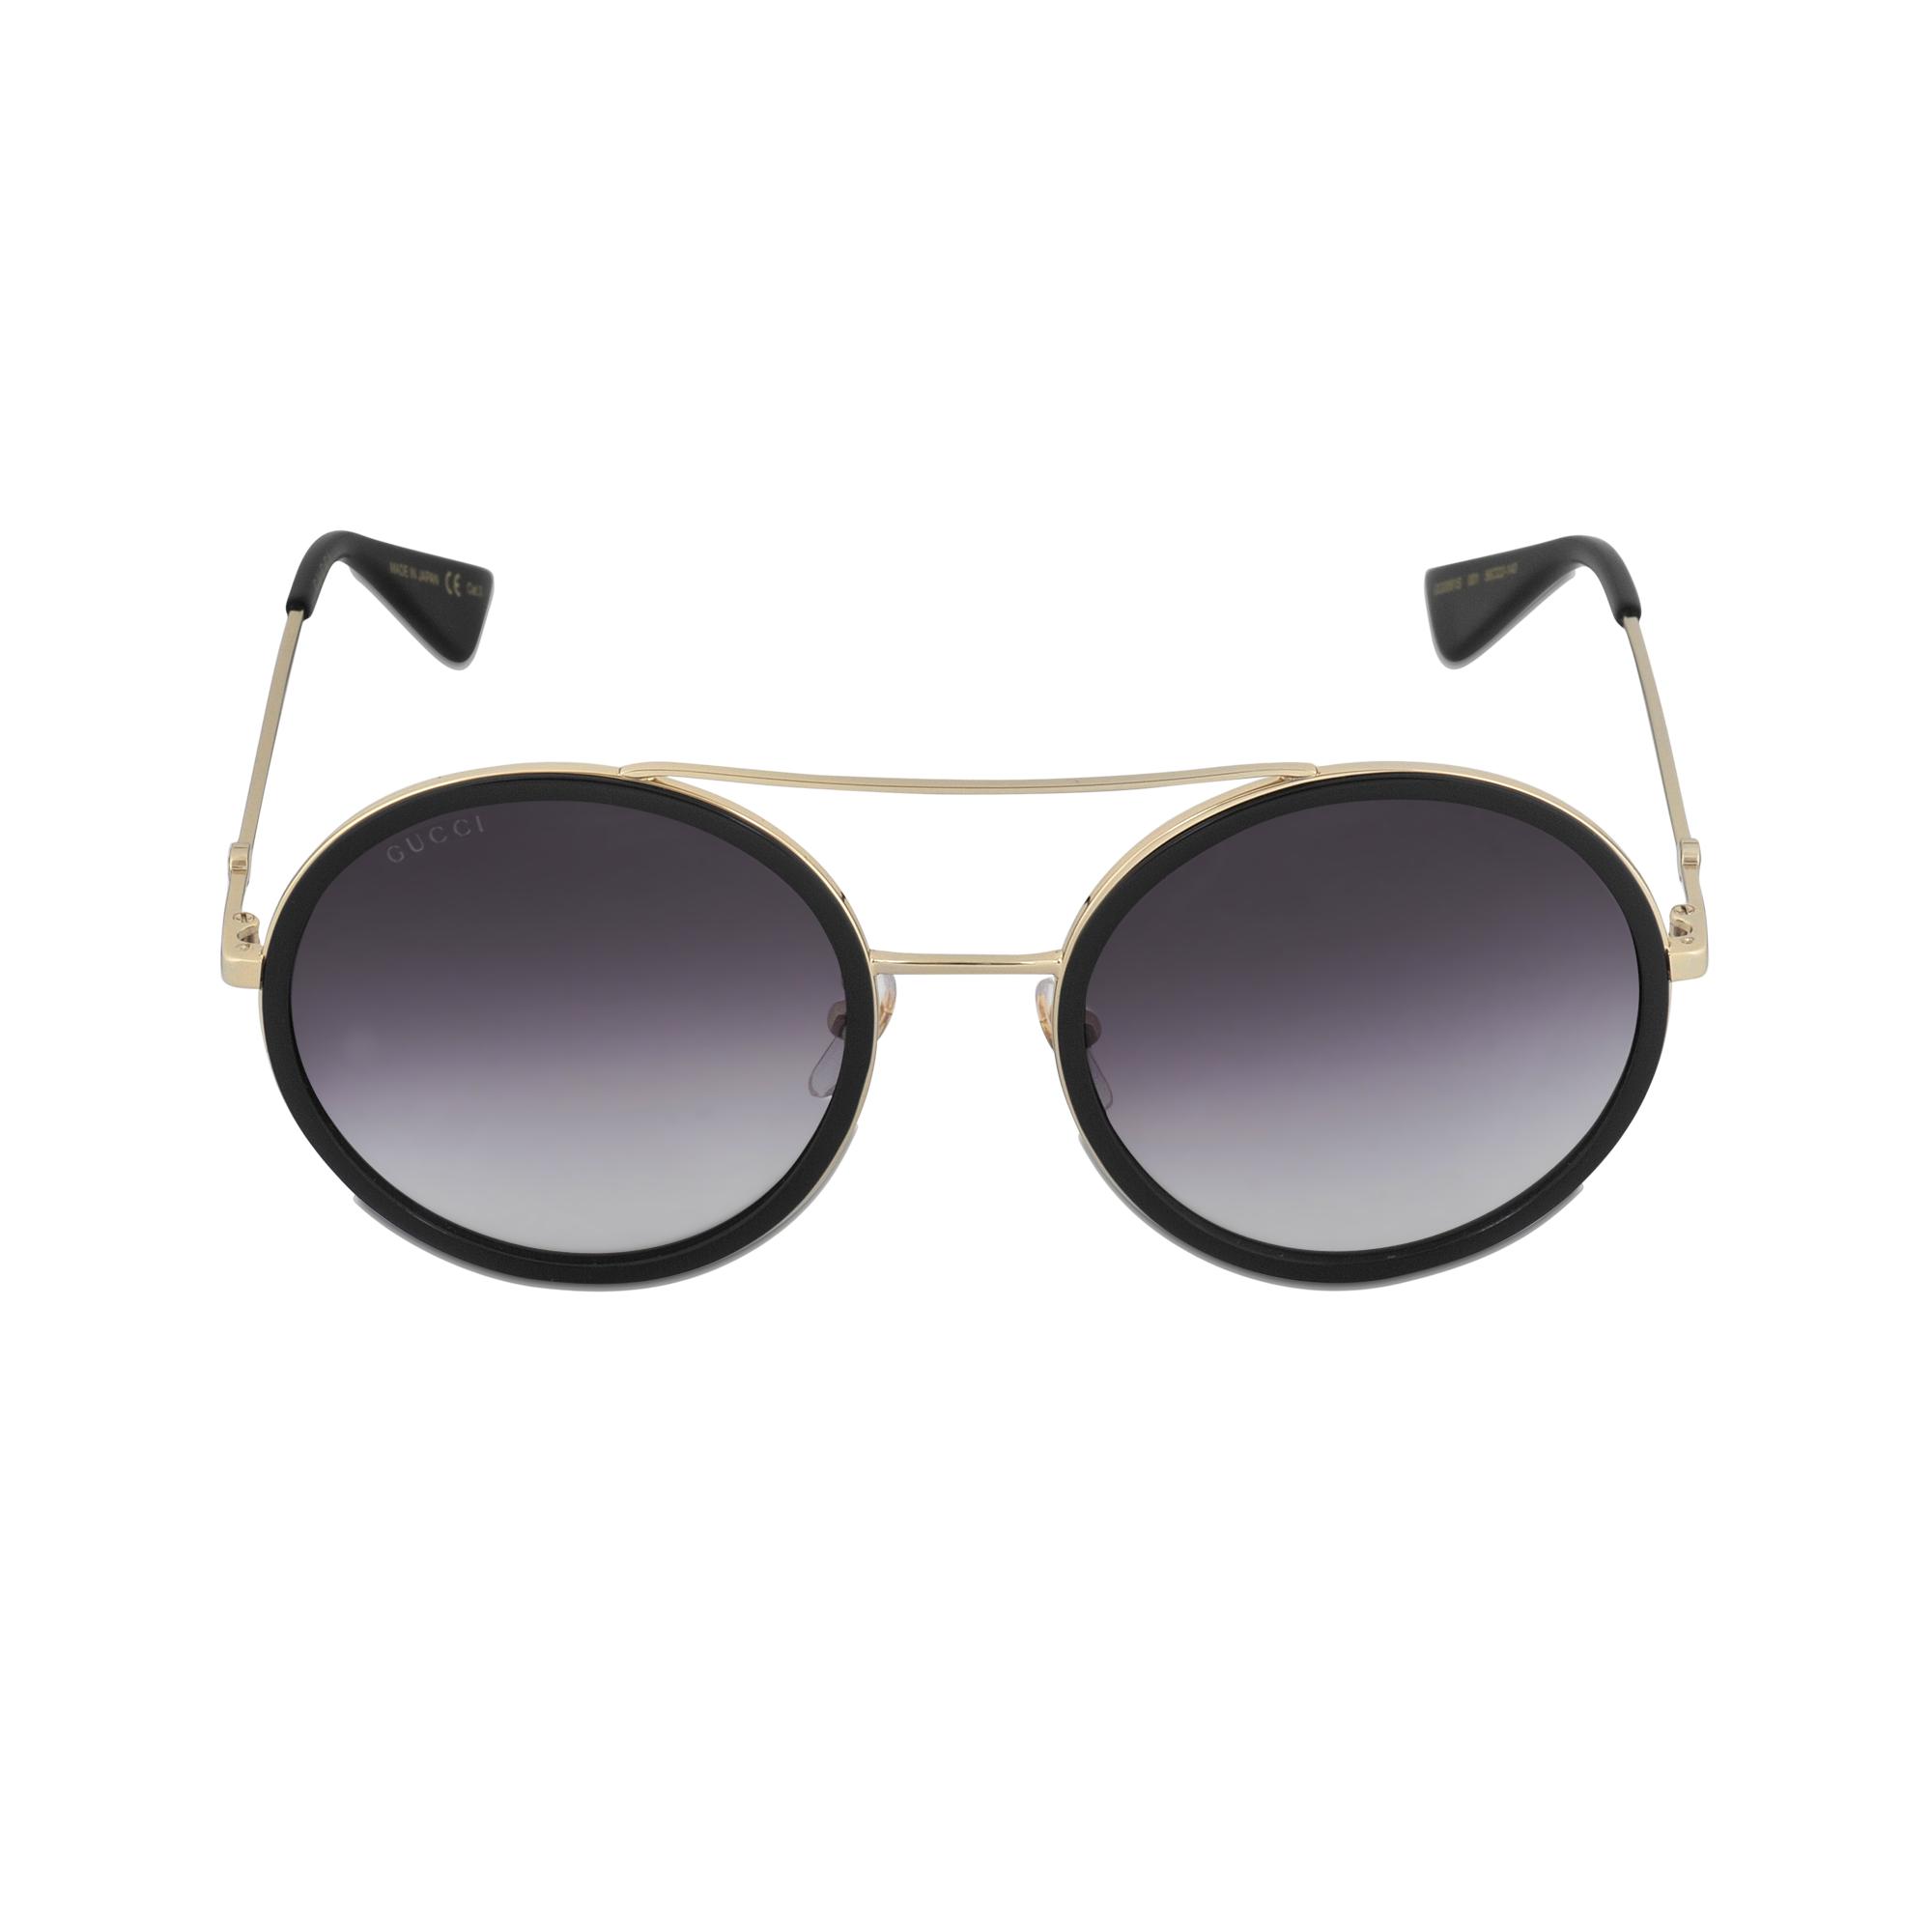 Gucci Sunglasses Gg0061s-001 in Black | Lyst